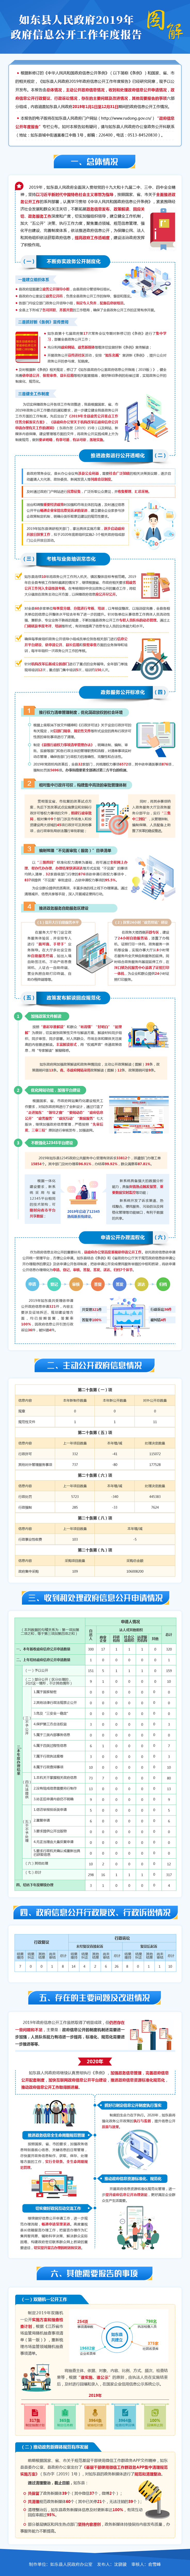 《如东县人民政府2019年政府信息公开工作年度报告》图解-2002121.png